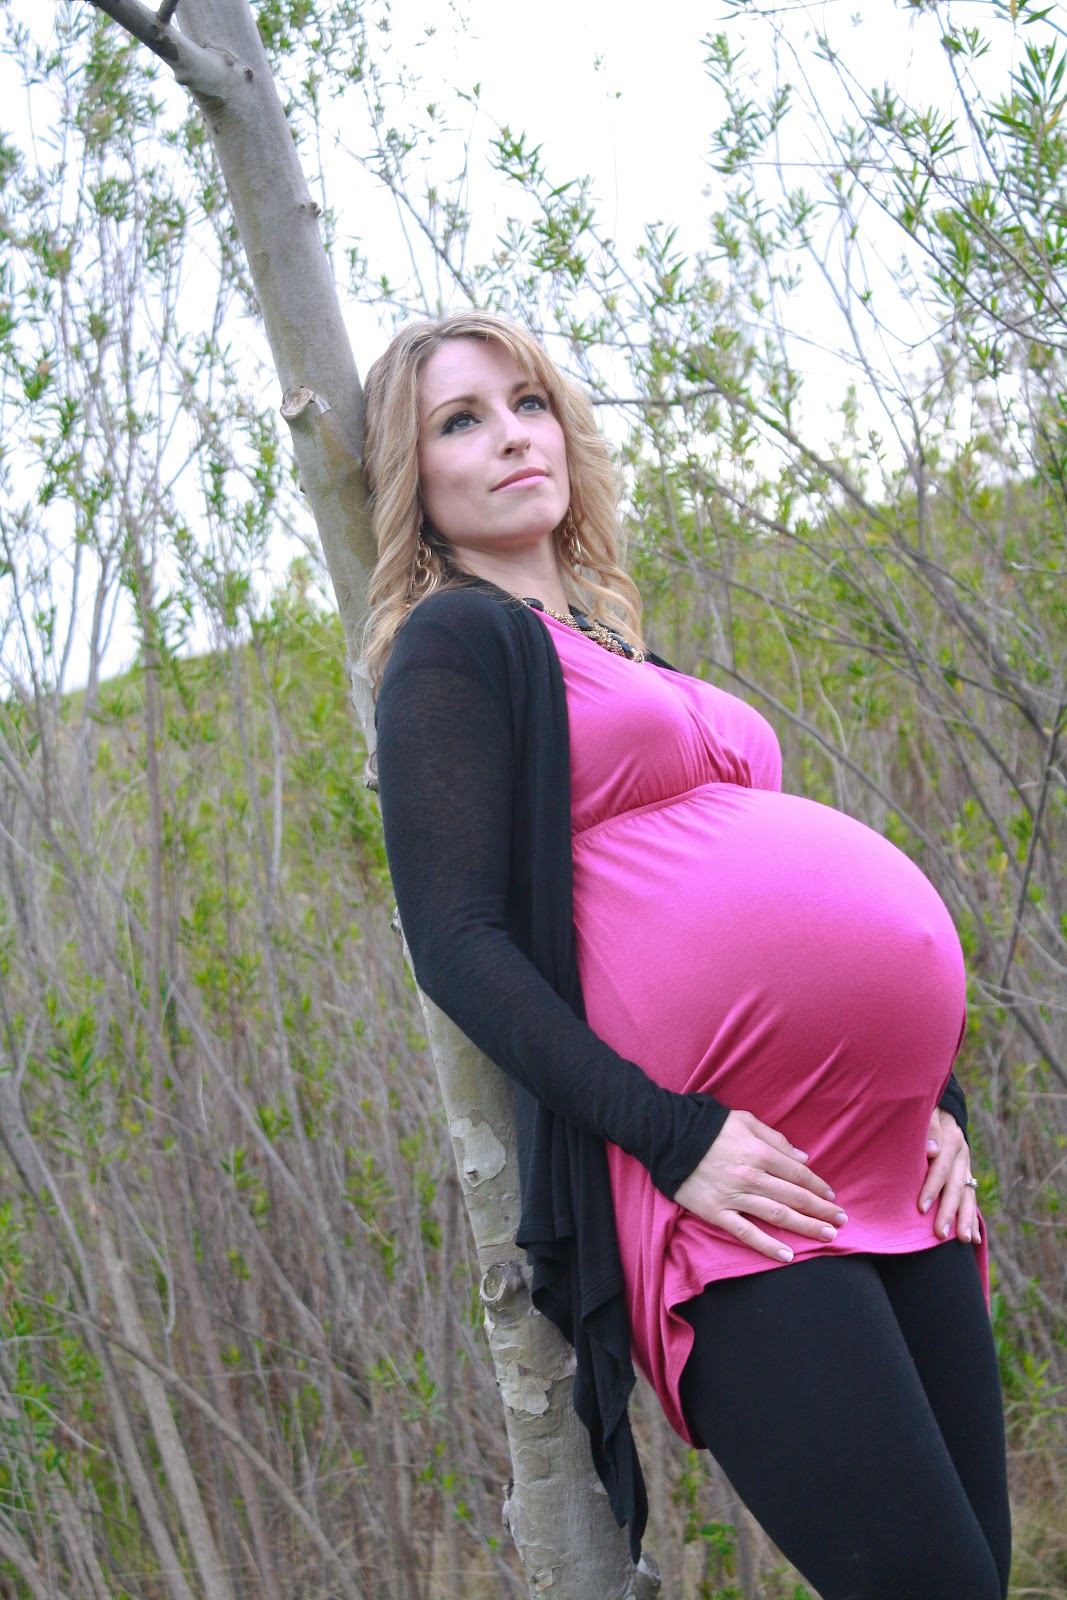 Over 40 Weeks Pregnant Risks